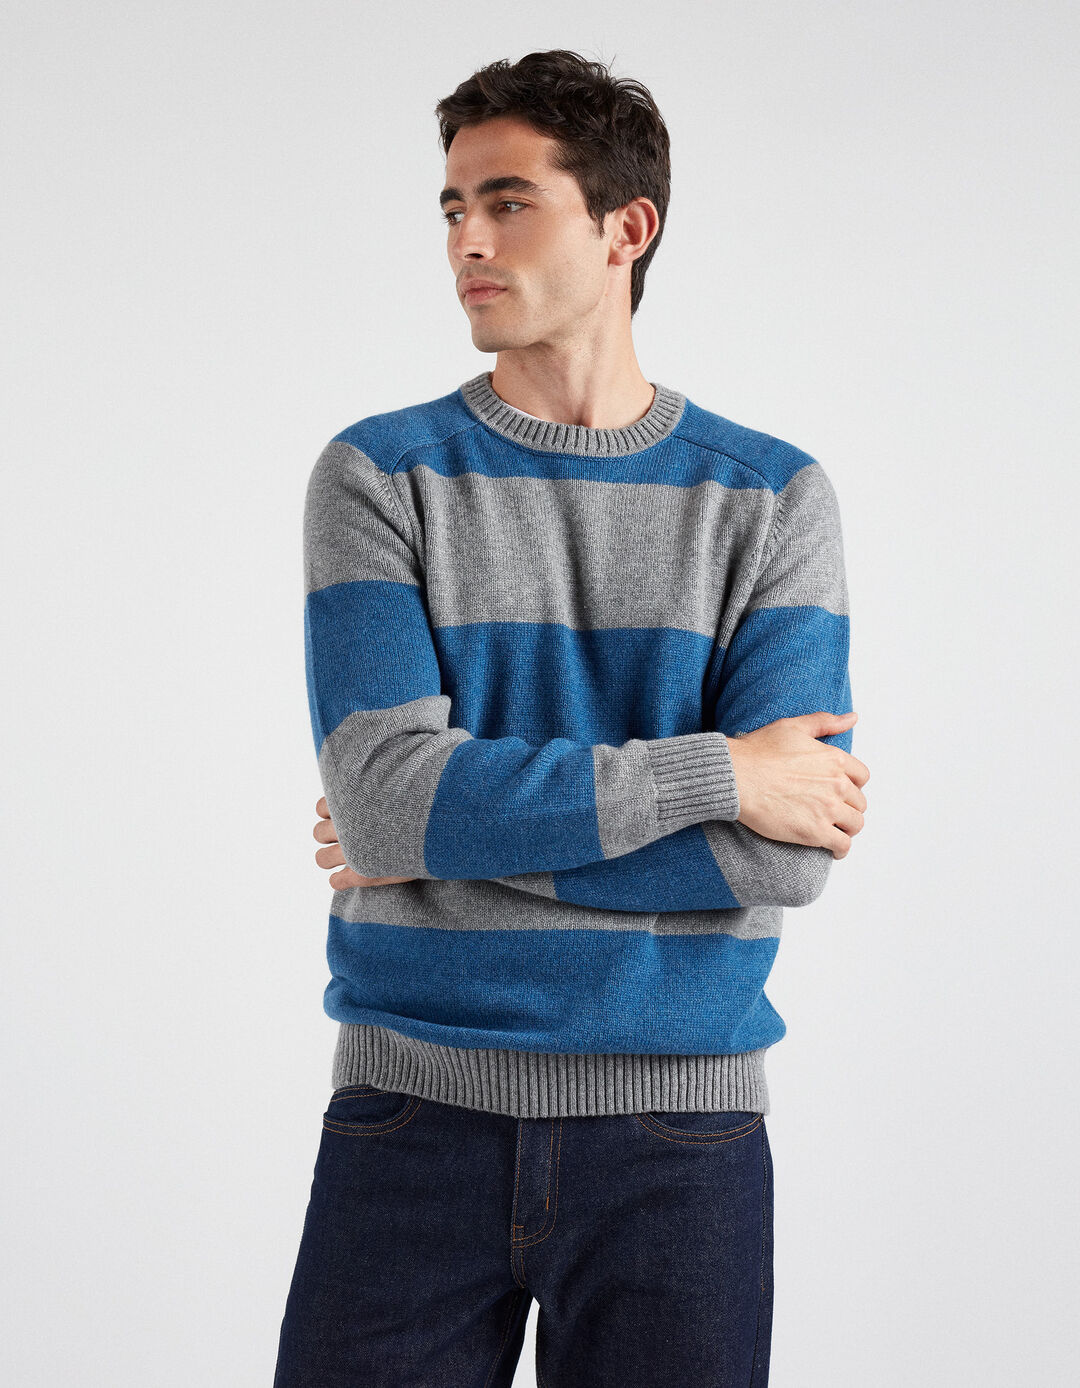 Wool Blend Striped Knit Sweater, Men, Blue